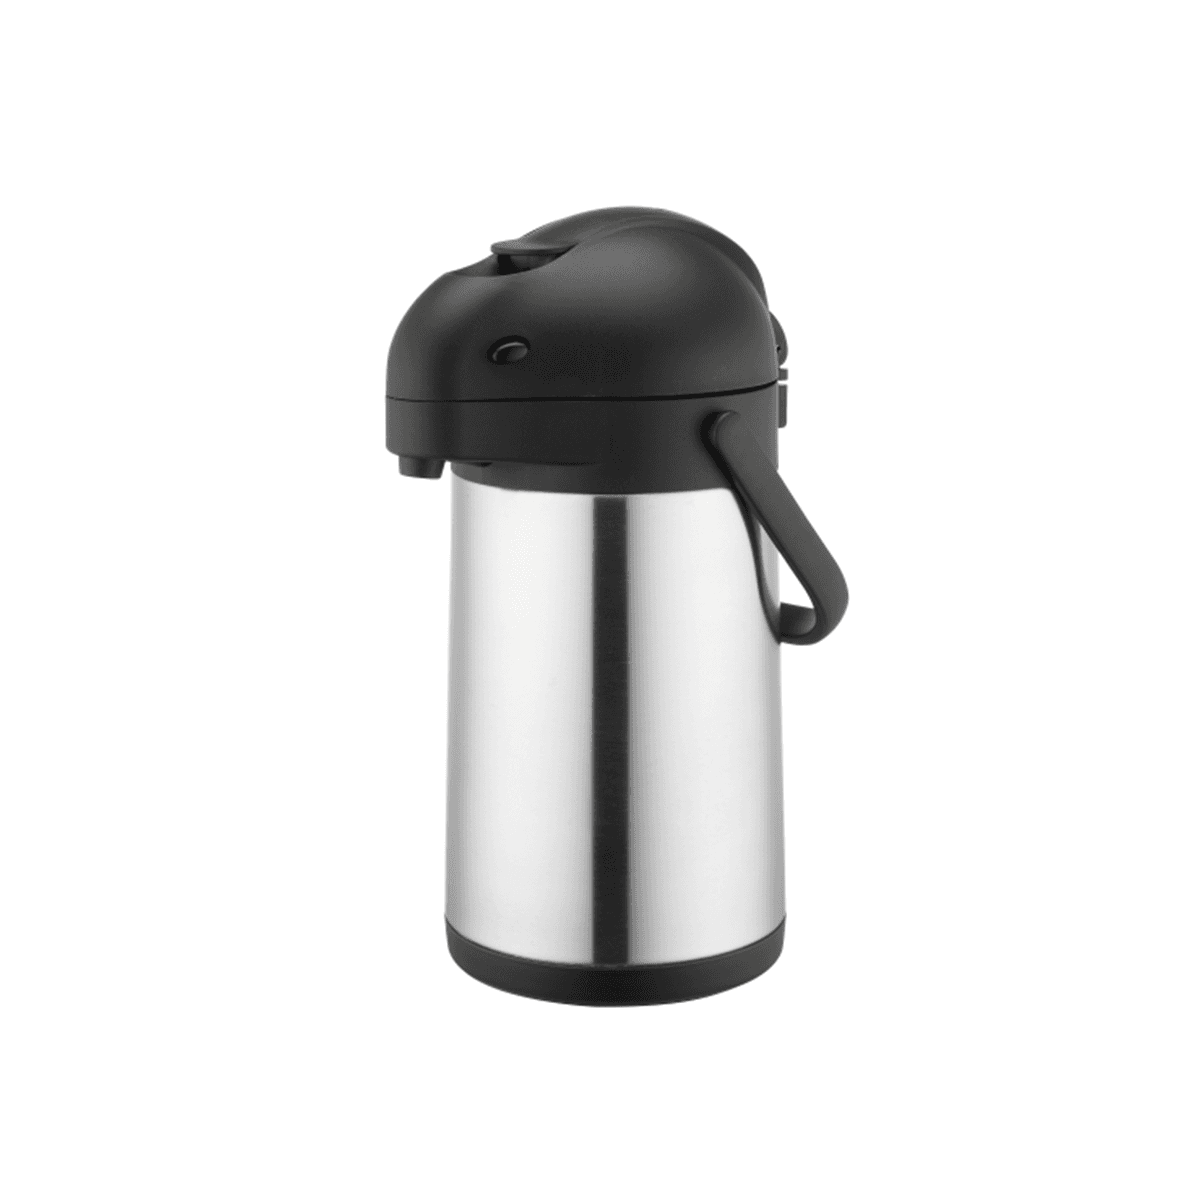 ترمس شاي وقهوة حافظ للحرارة 1.9 لتر ستانلس ستيل فضي  أسود سانكس Sunnex Stainless Steel Air Pot 1.9 Liter